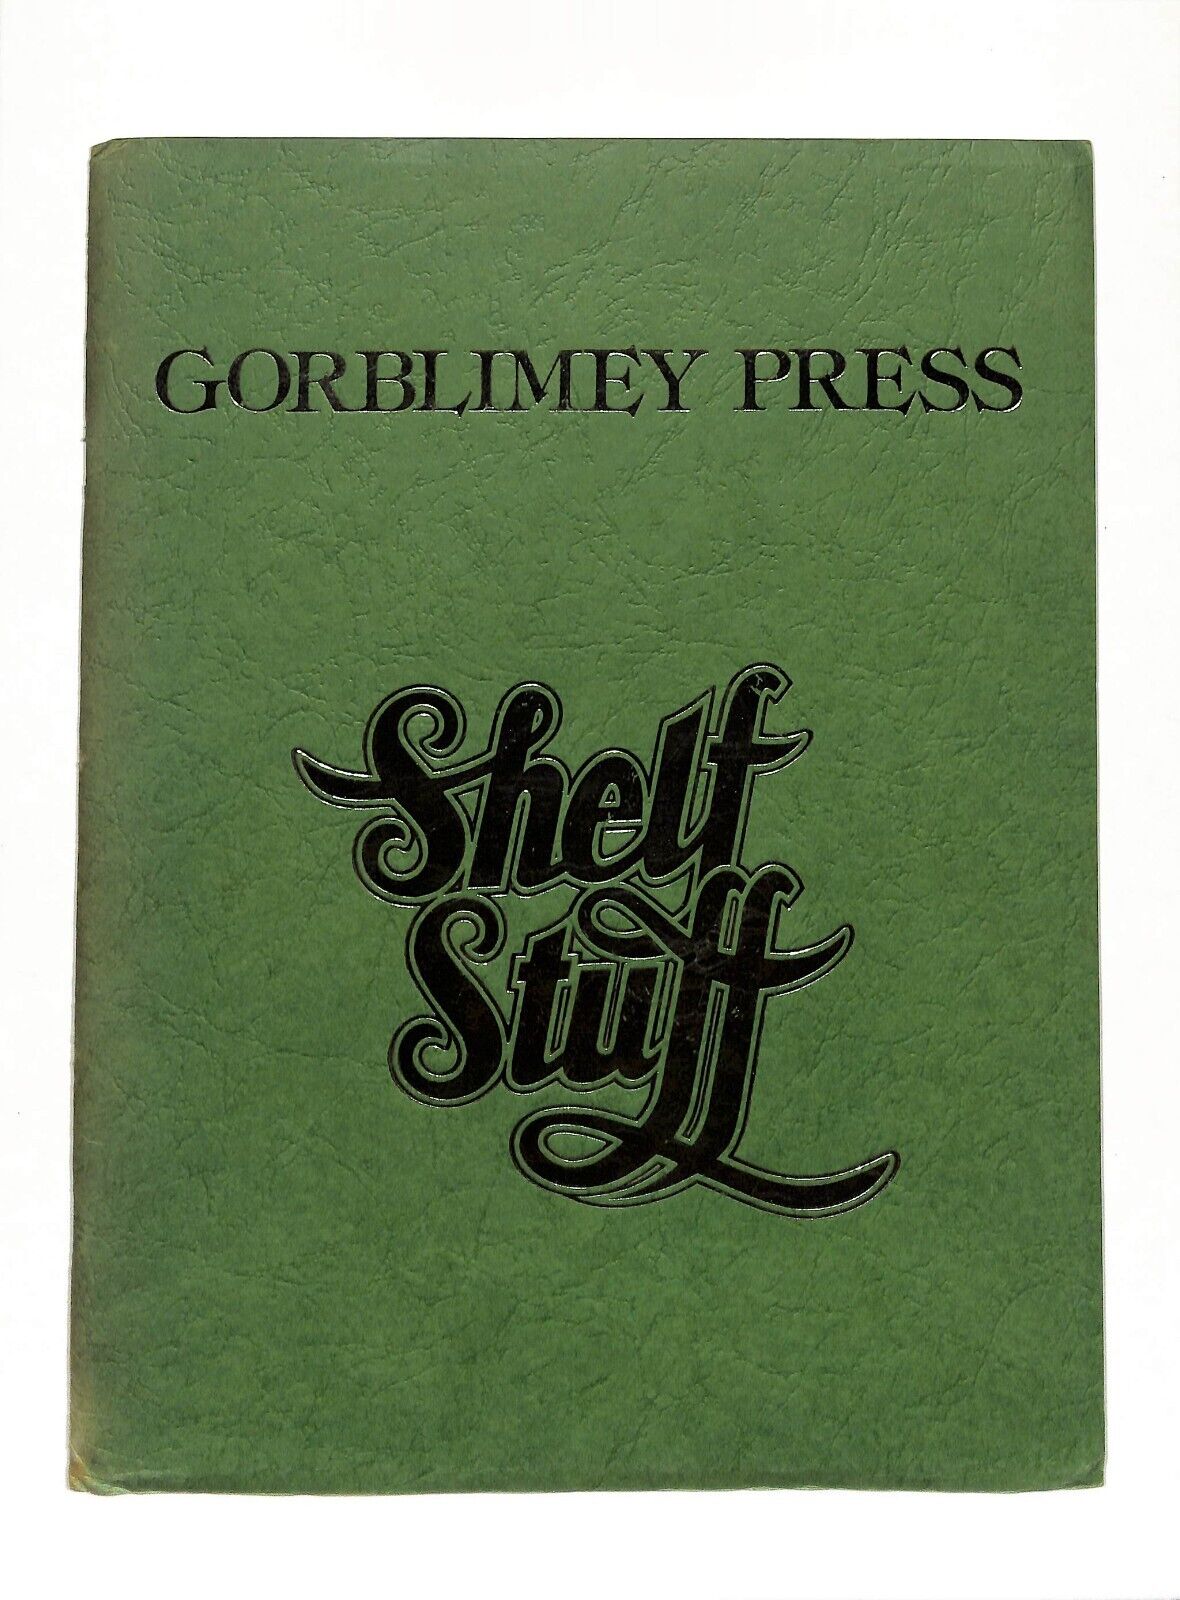 Gorblimey Press Shelf Stuff Barry Smith 1975 First Printing